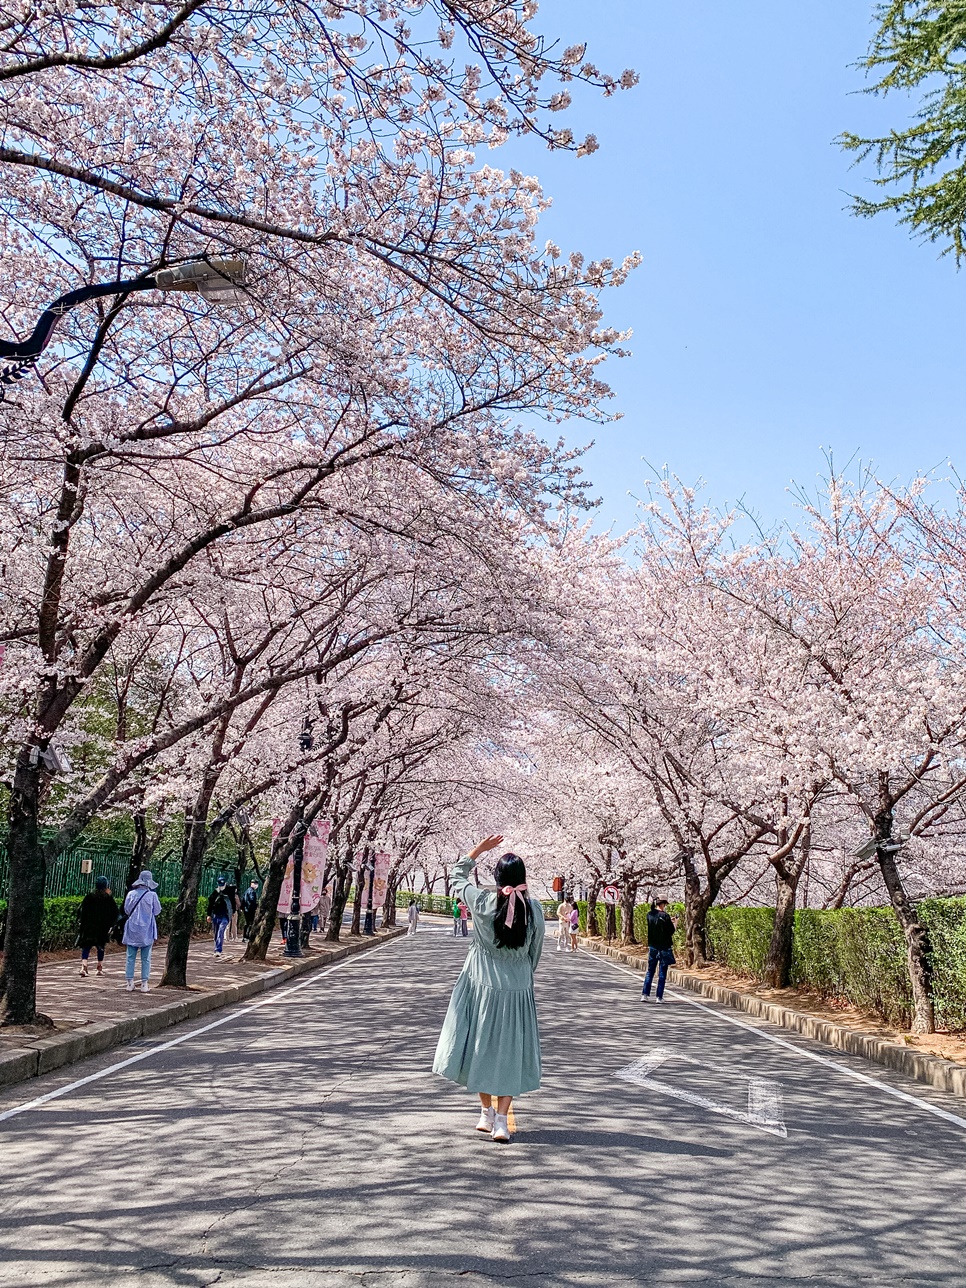 실시간 대구 벚꽃 명소 BEST 4 : 대구 이월드 83타워 동촌유원지 등